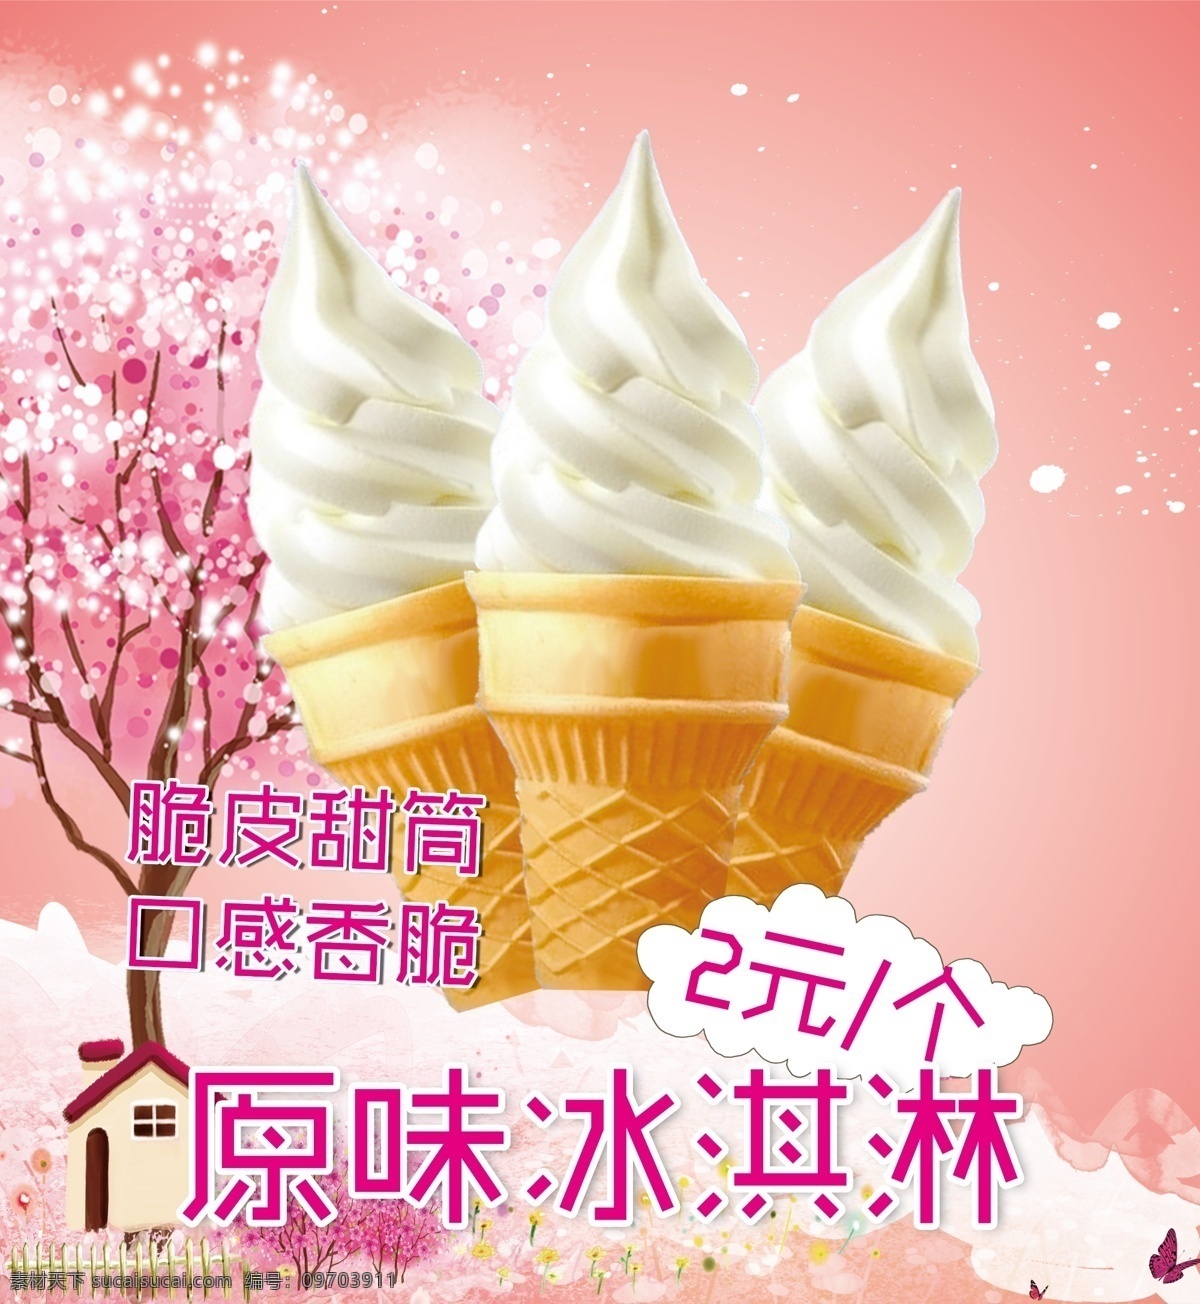 甜筒 冰淇淋 甜筒冰淇淋 甜筒图片 冰淇淋图片 樱花树 粉色海报背景 宣传海报图